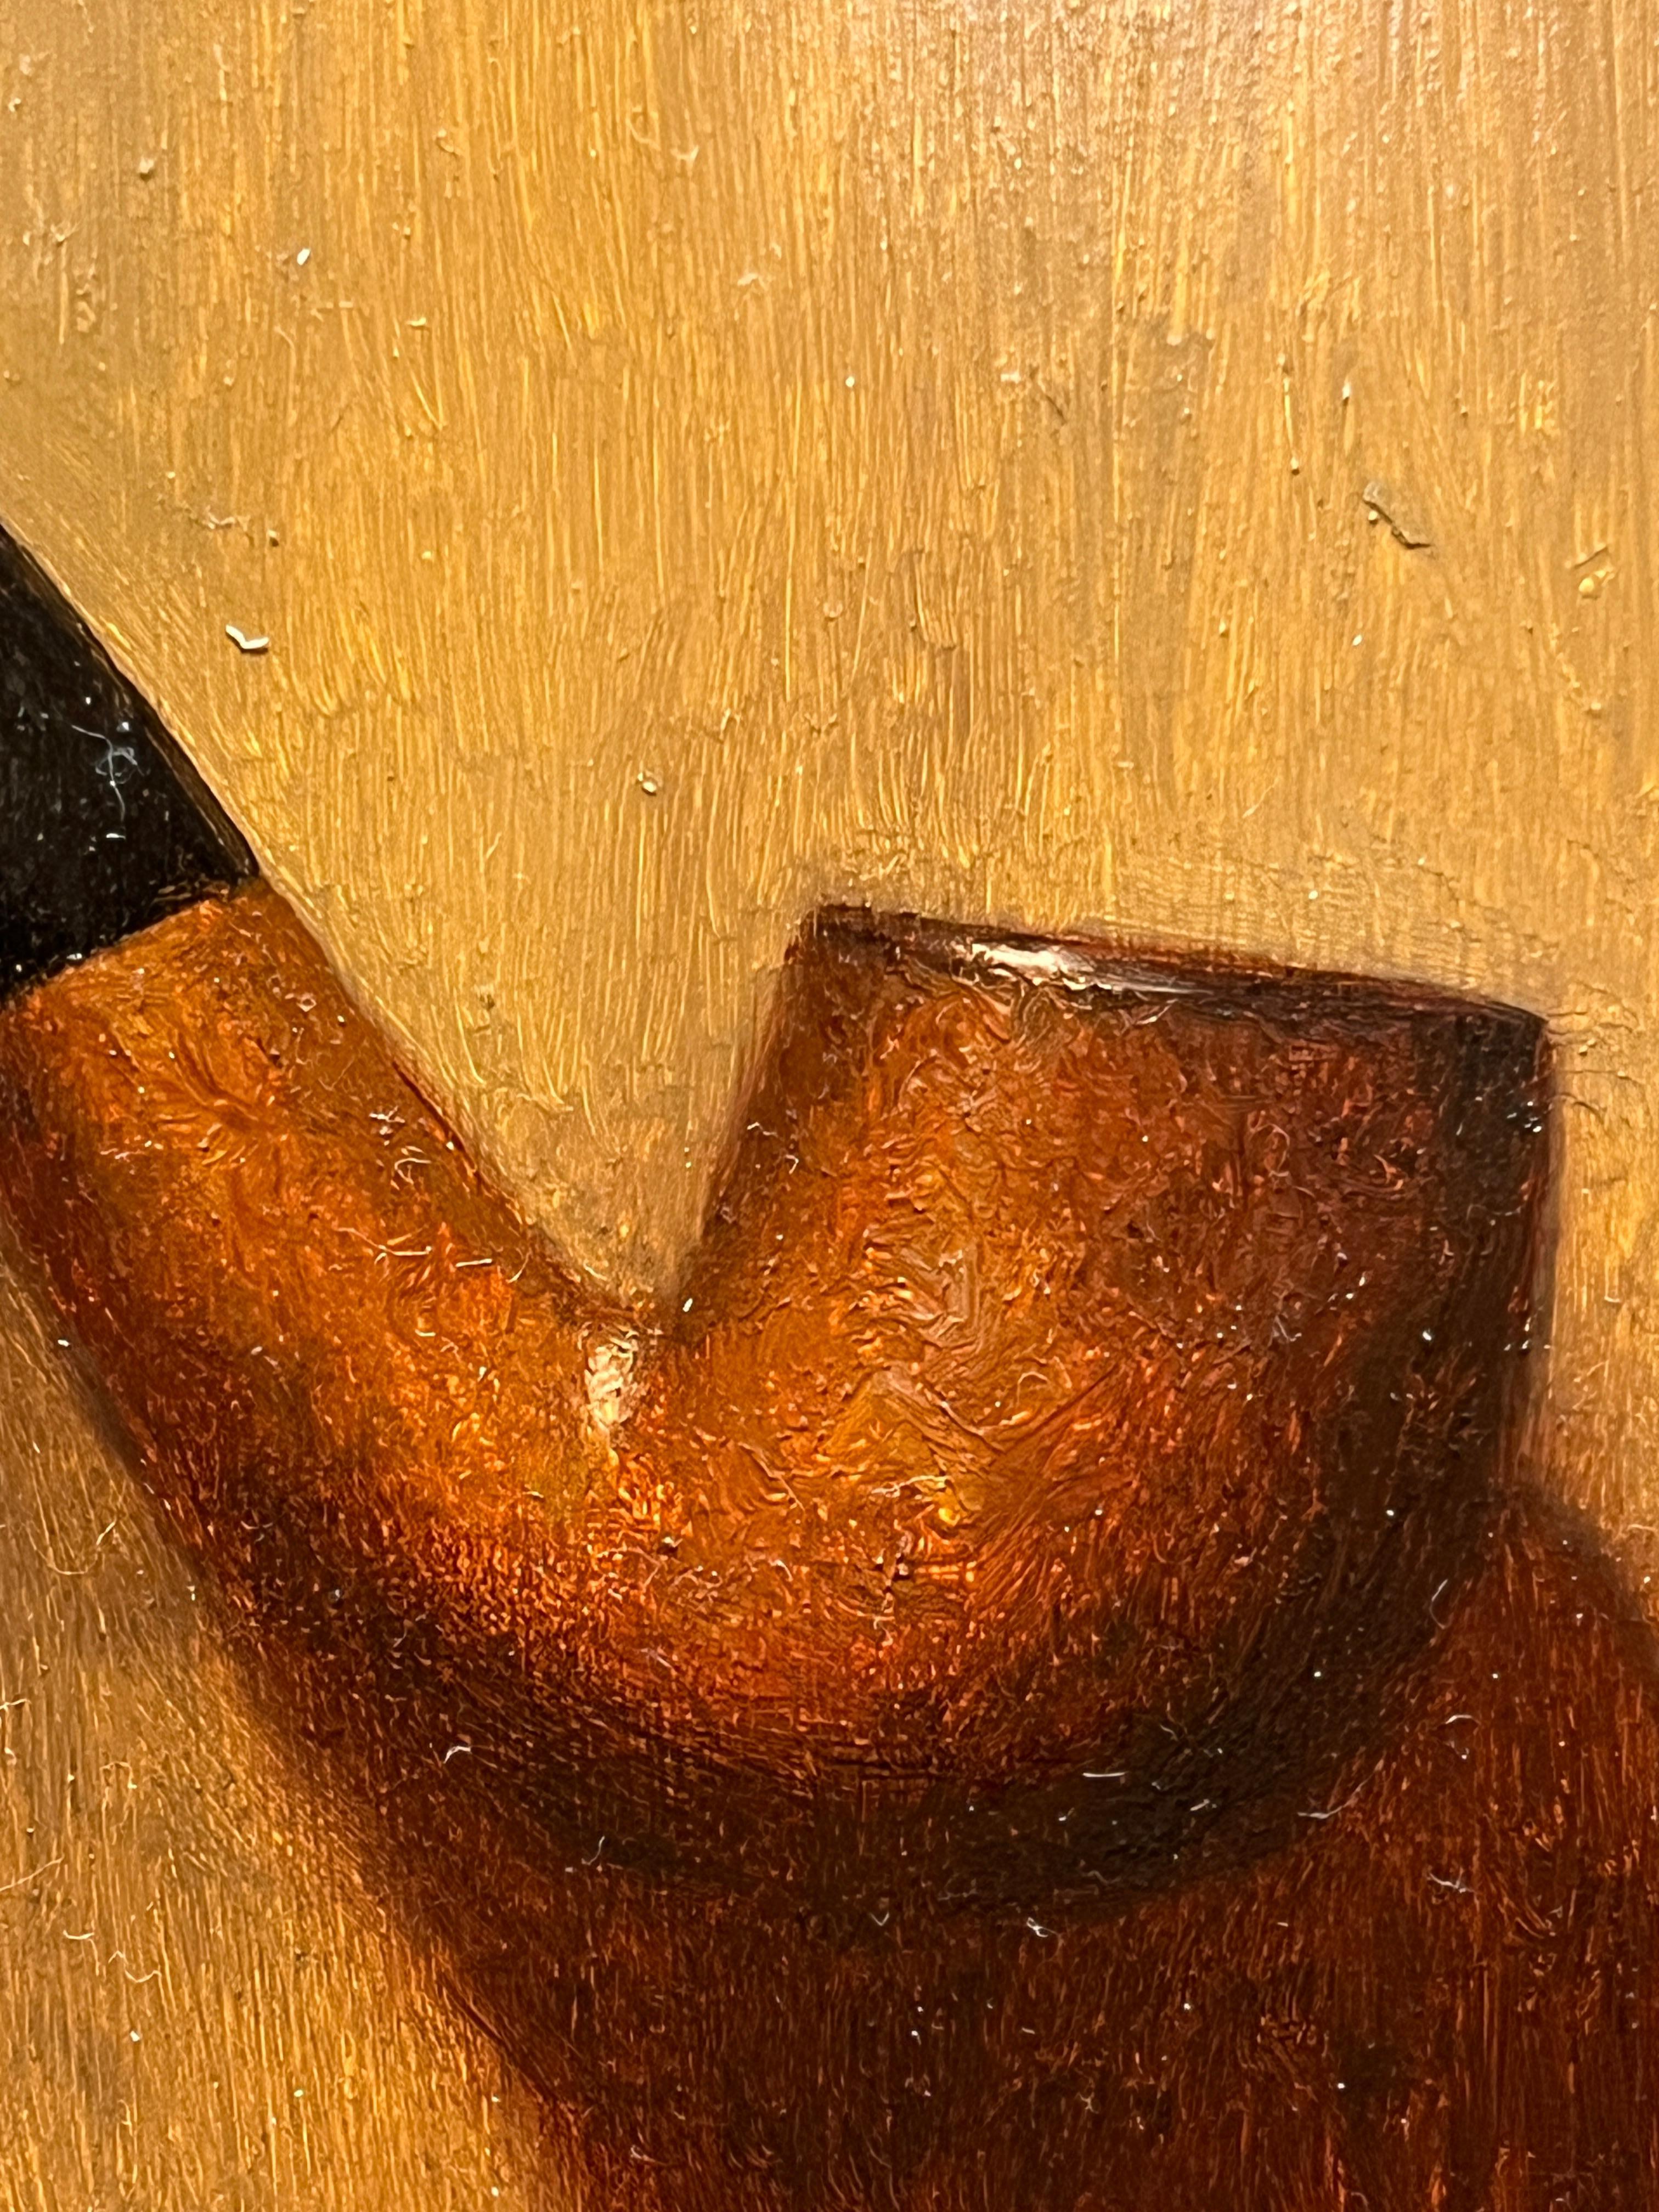 Le Pipe est une peinture à l'huile originale sur panneau. Il est encadré dans un cadre noir fait à la main avec une lèvre en or pâle. Les dimensions totales avec le cadre inclus sont d'environ 12x10.5 pouces. Maître du trompe-l'oeil, l'artiste a